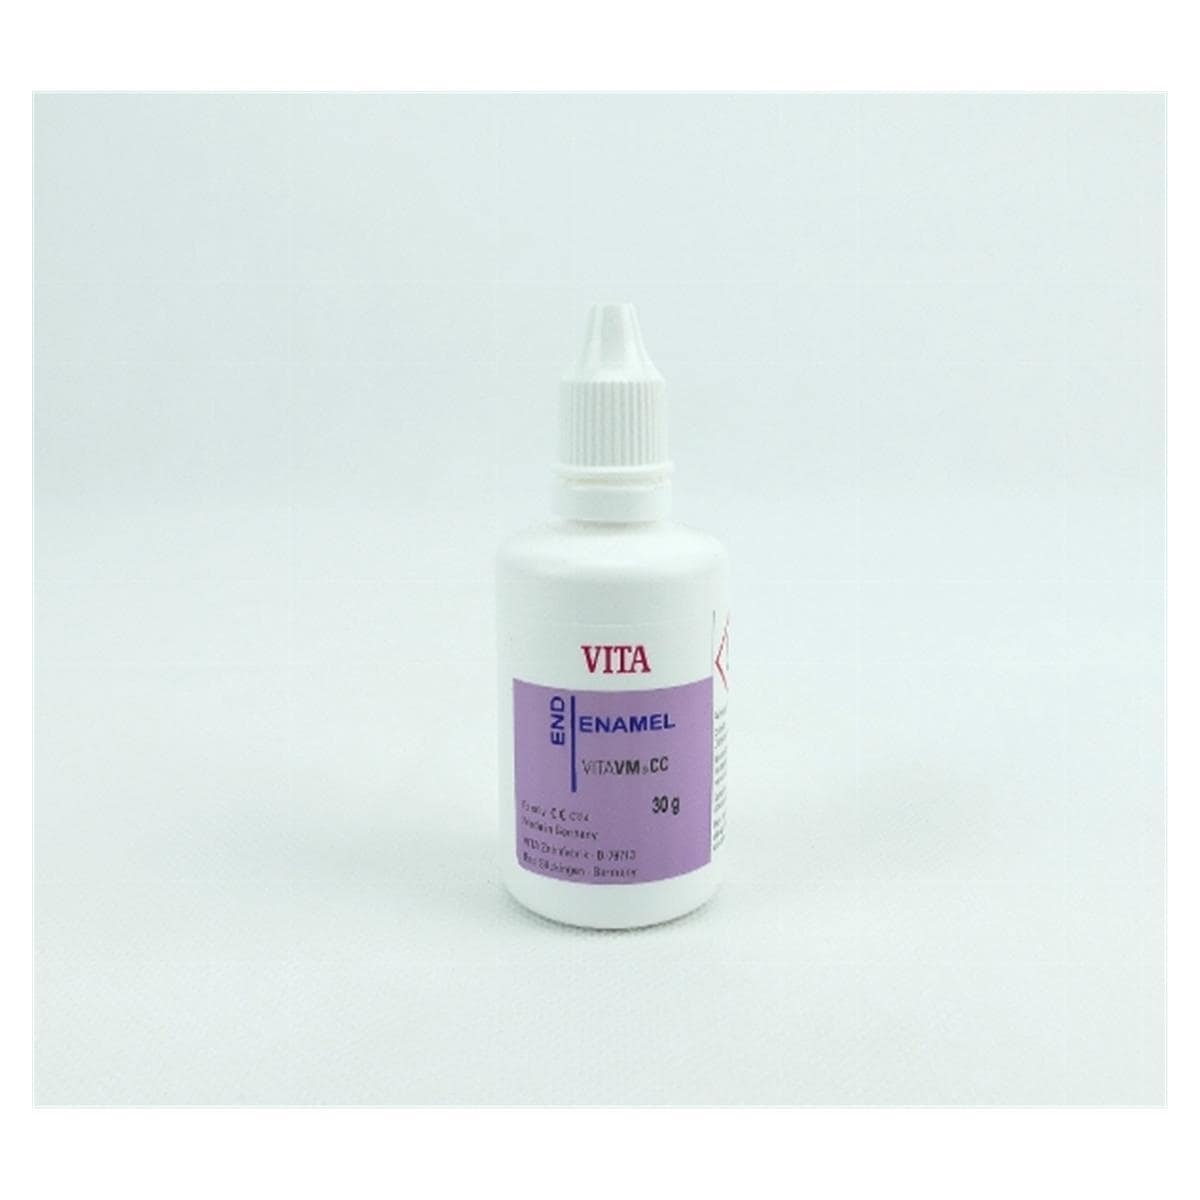 VITA VMCC Polymer - Enamel - 30 g - END Fonc